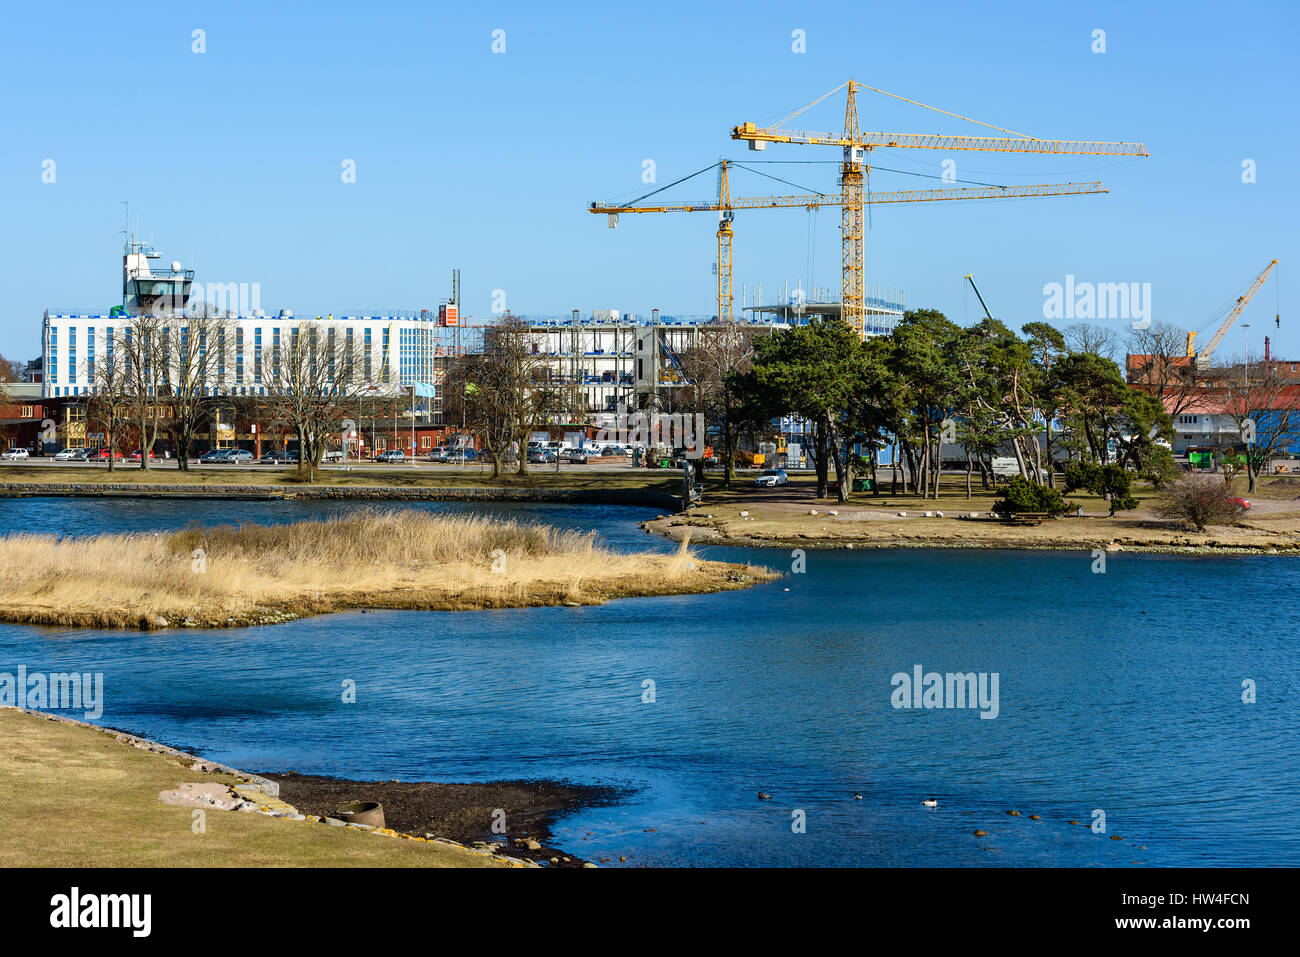 Kalmar, Schweden - 15. März 2017: Dokumentation der Baustelle am Hafen Linnaeus Universität. Meerwasser ist geplant, das Gebäude zu kühlen wh Stockfoto